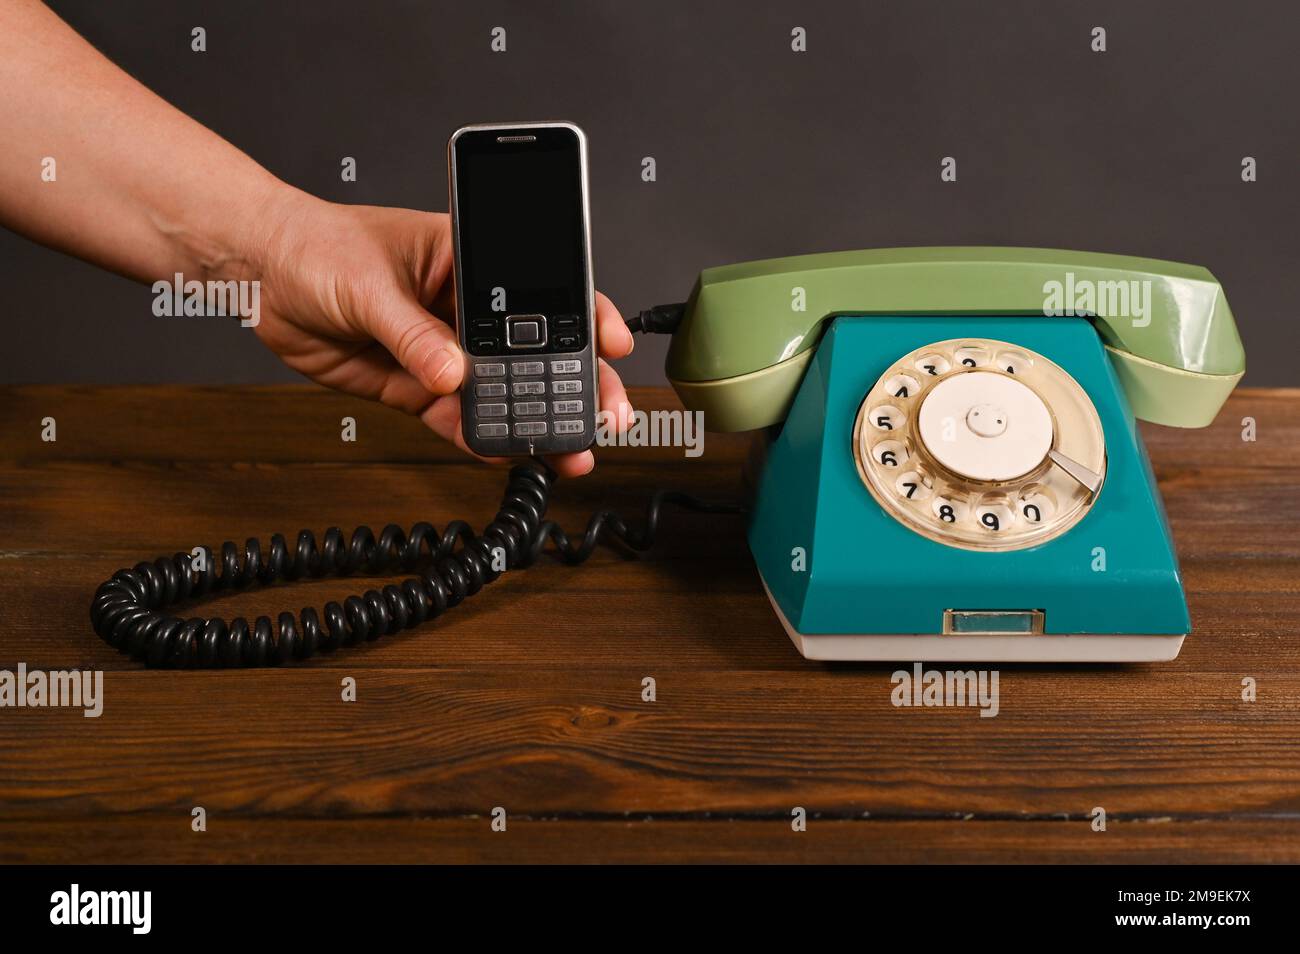 un vecchio telefono cellulare a pulsante in mano a una donna accanto a un vecchio telefono a chiamata vintage. Foto Stock